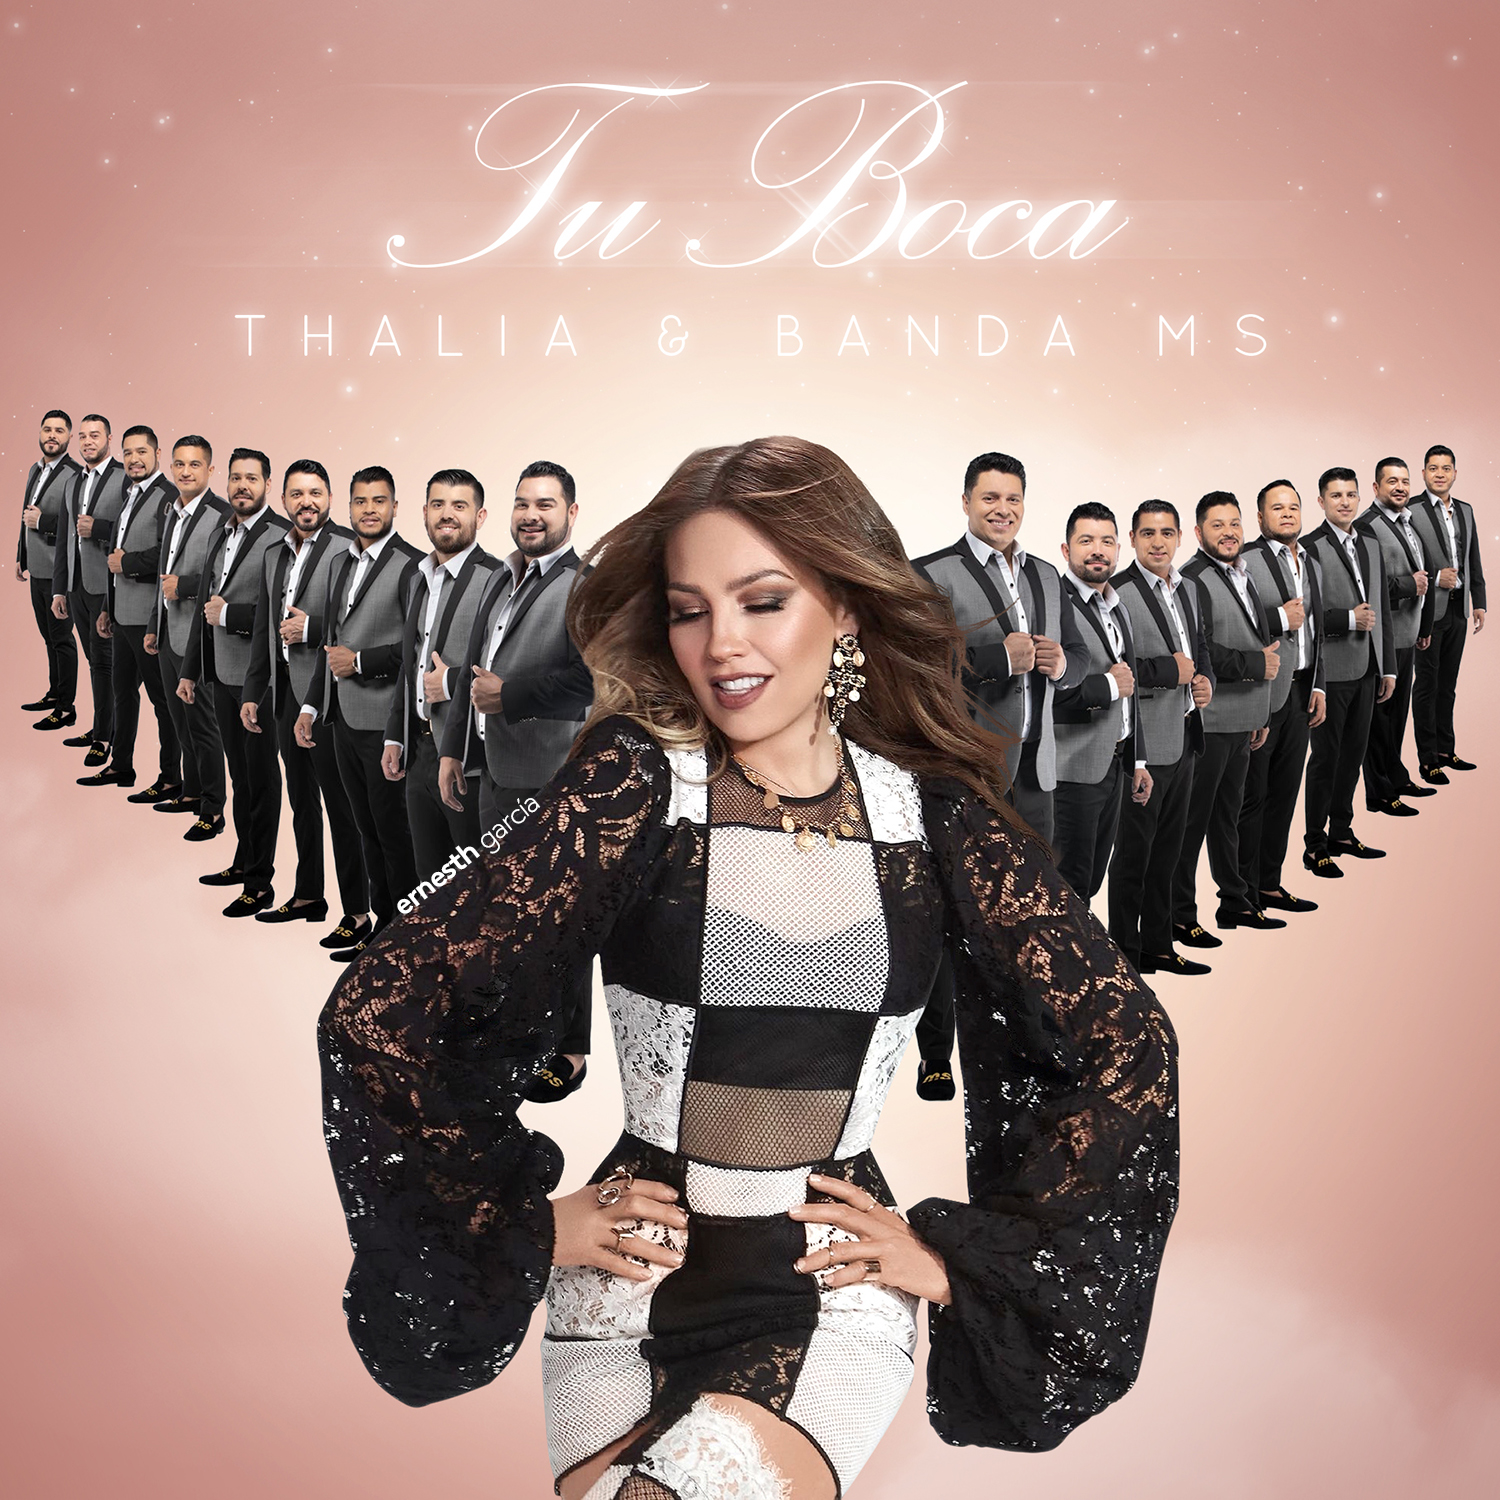 Thalía featuring Banda MS de Sergio Lizárraga — Tu Boca cover artwork